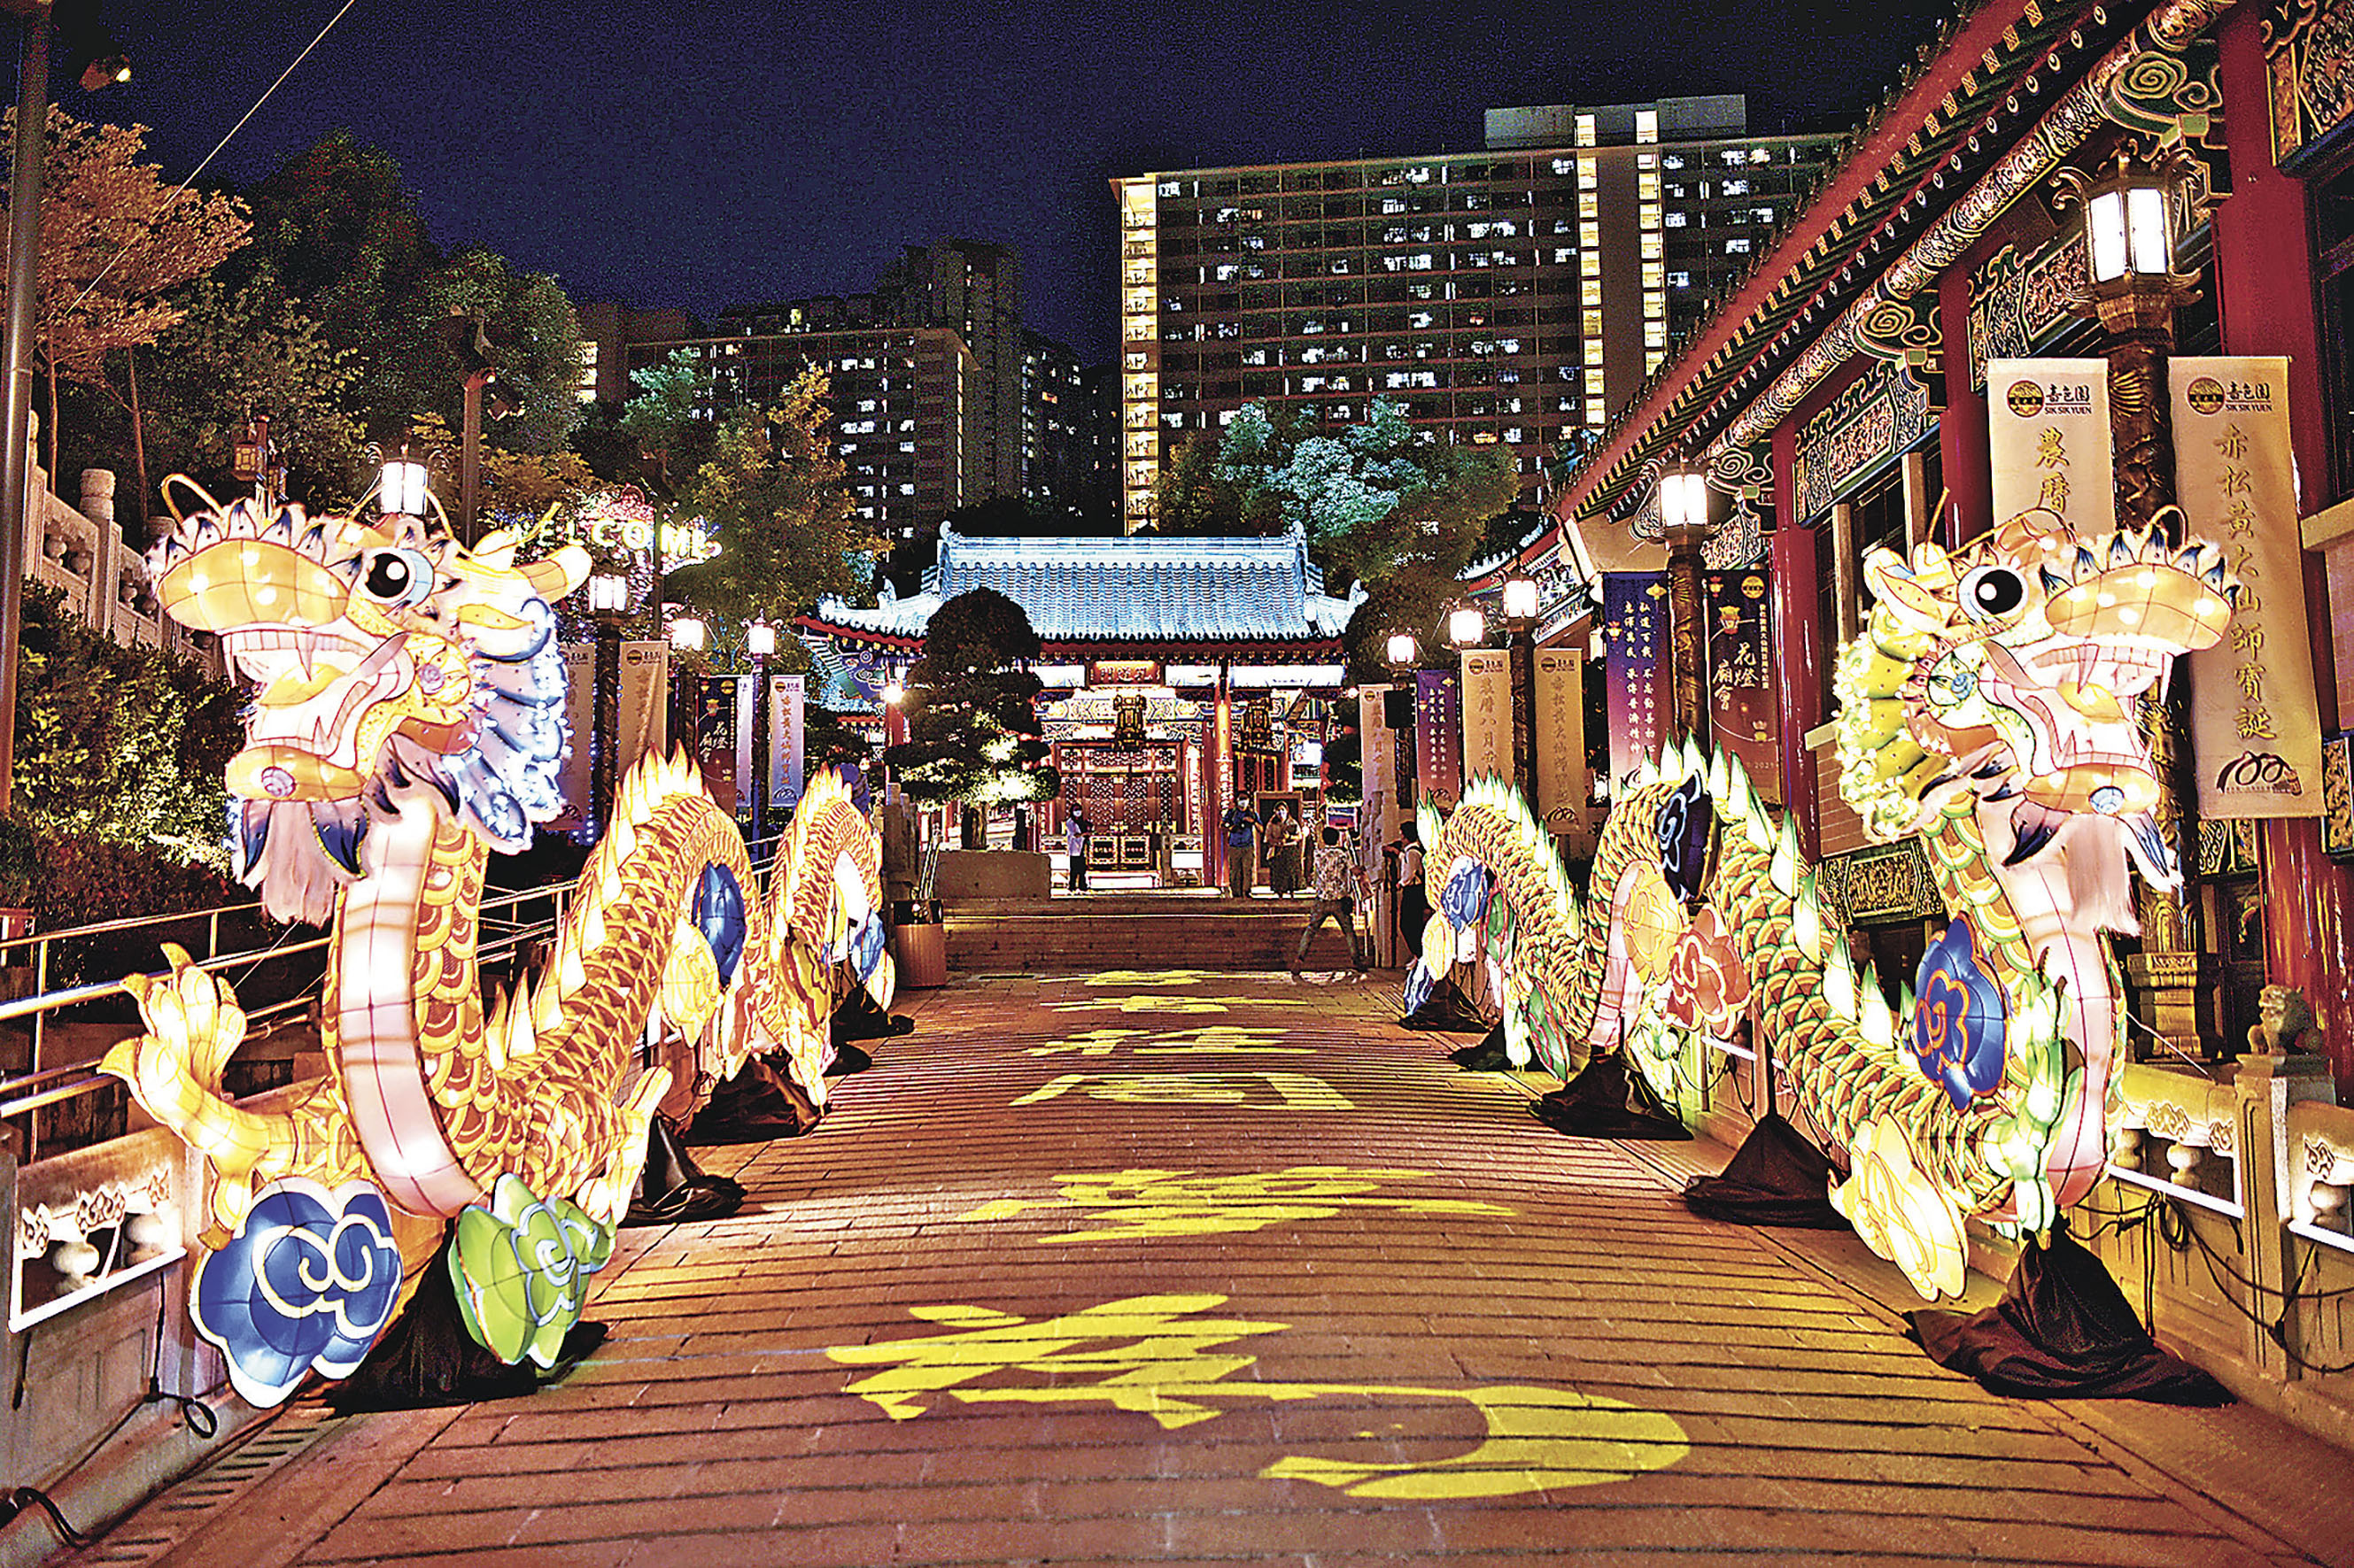 中秋佳节及啬色园百周年,黄大仙祠将於本月18至24日举行花灯庙会活动